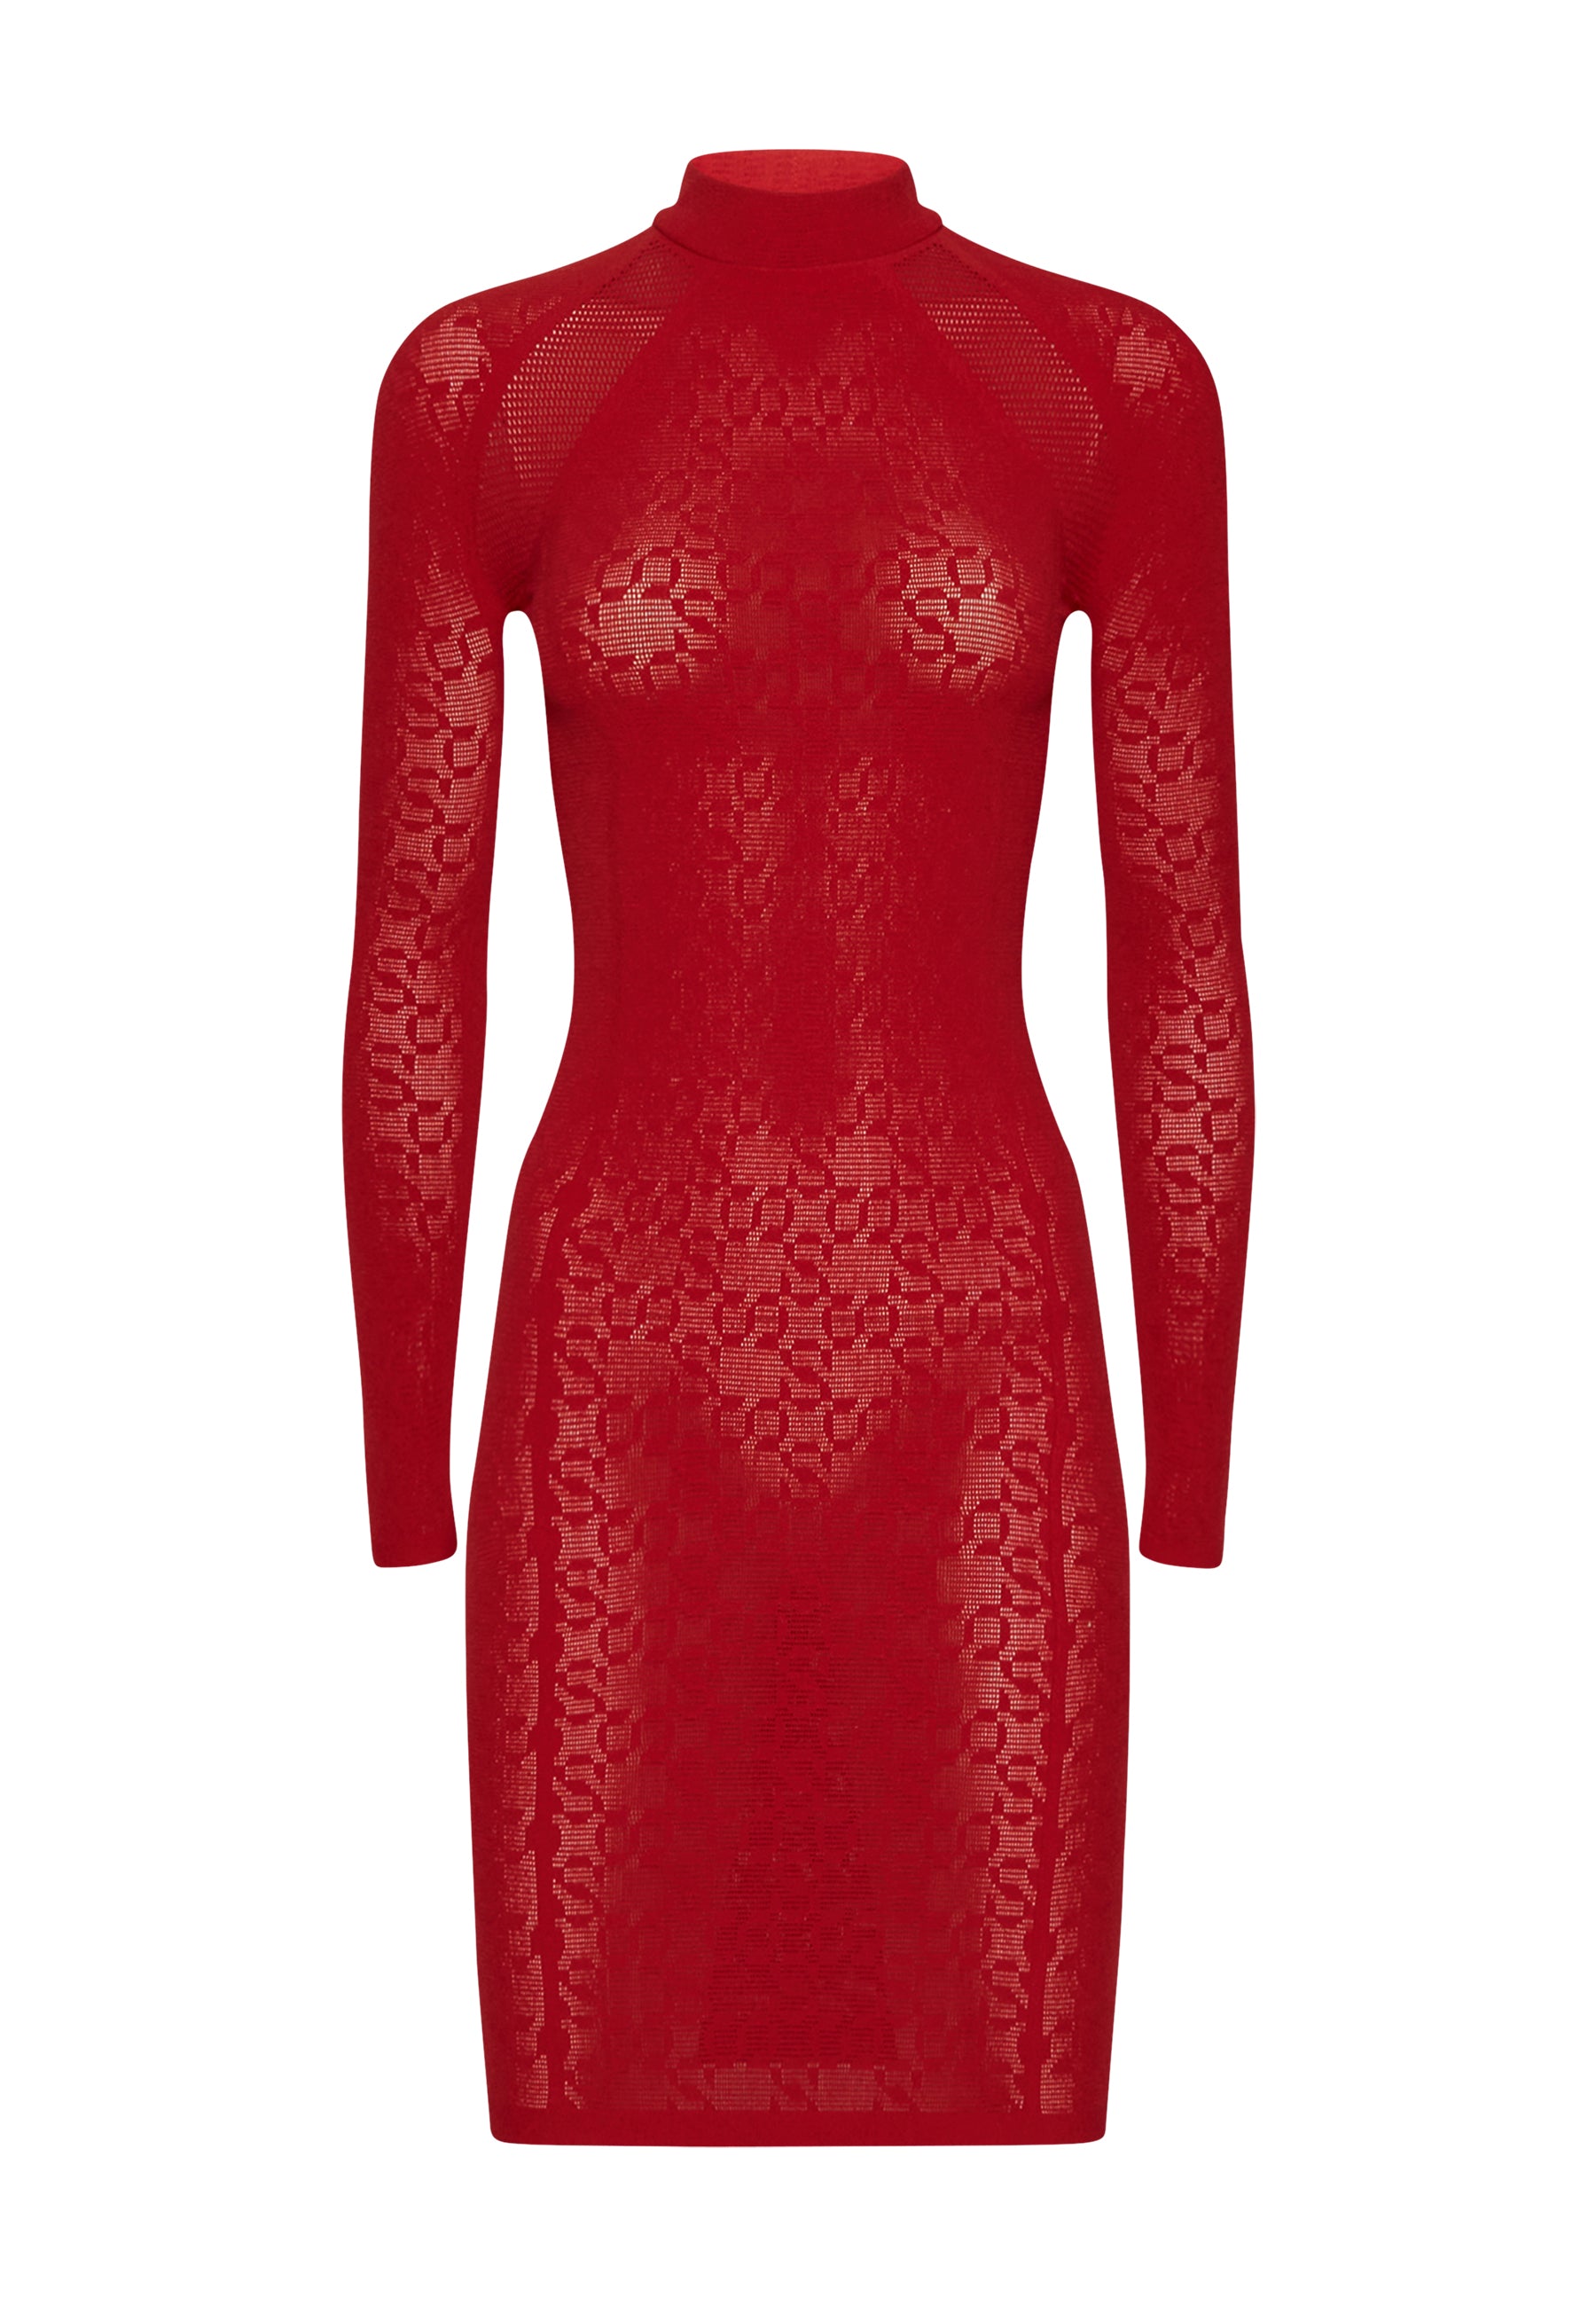 Simkhai – Intricate Sheer Pattern Mini Dress